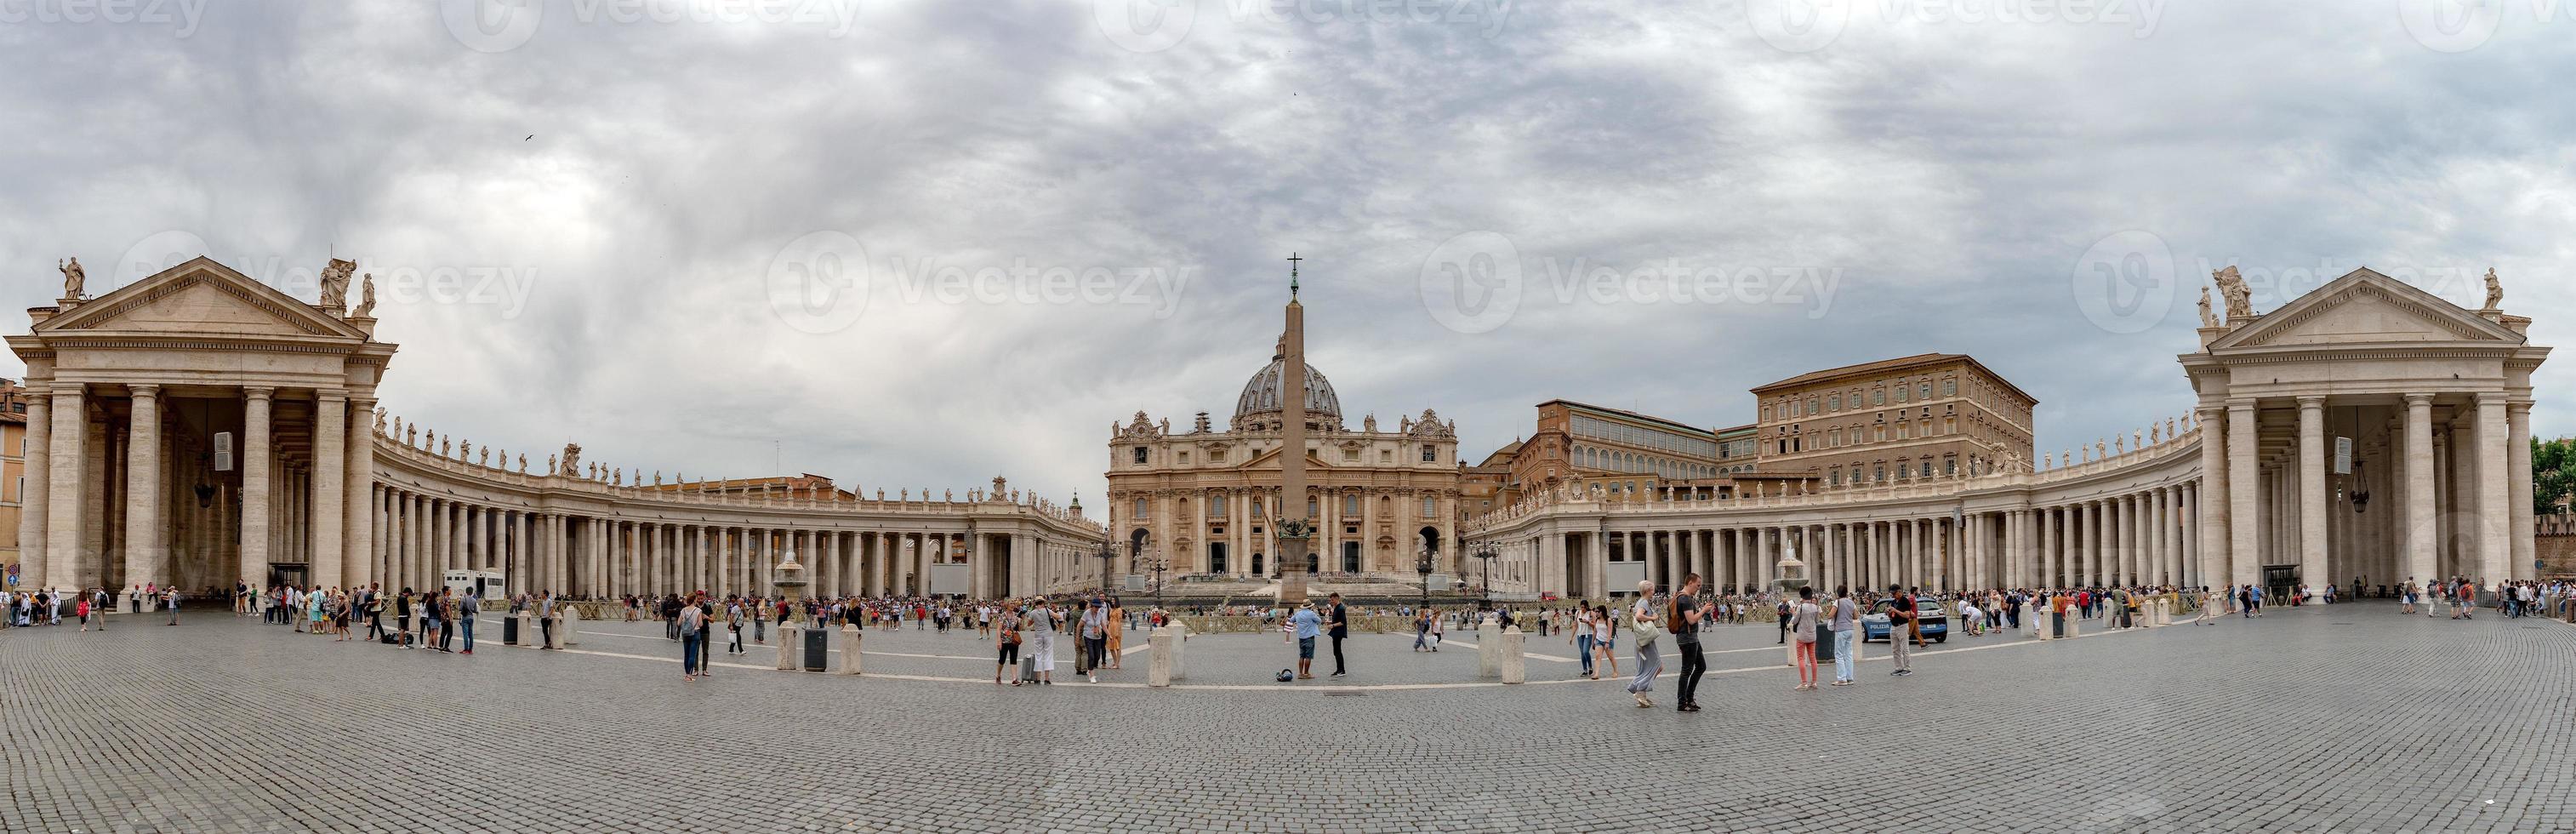 Vaticaan stad, Vaticaan - juni 8, 2018 Vaticaan plaats en heilige peter kerk na paus francis zondag massa in Rome foto